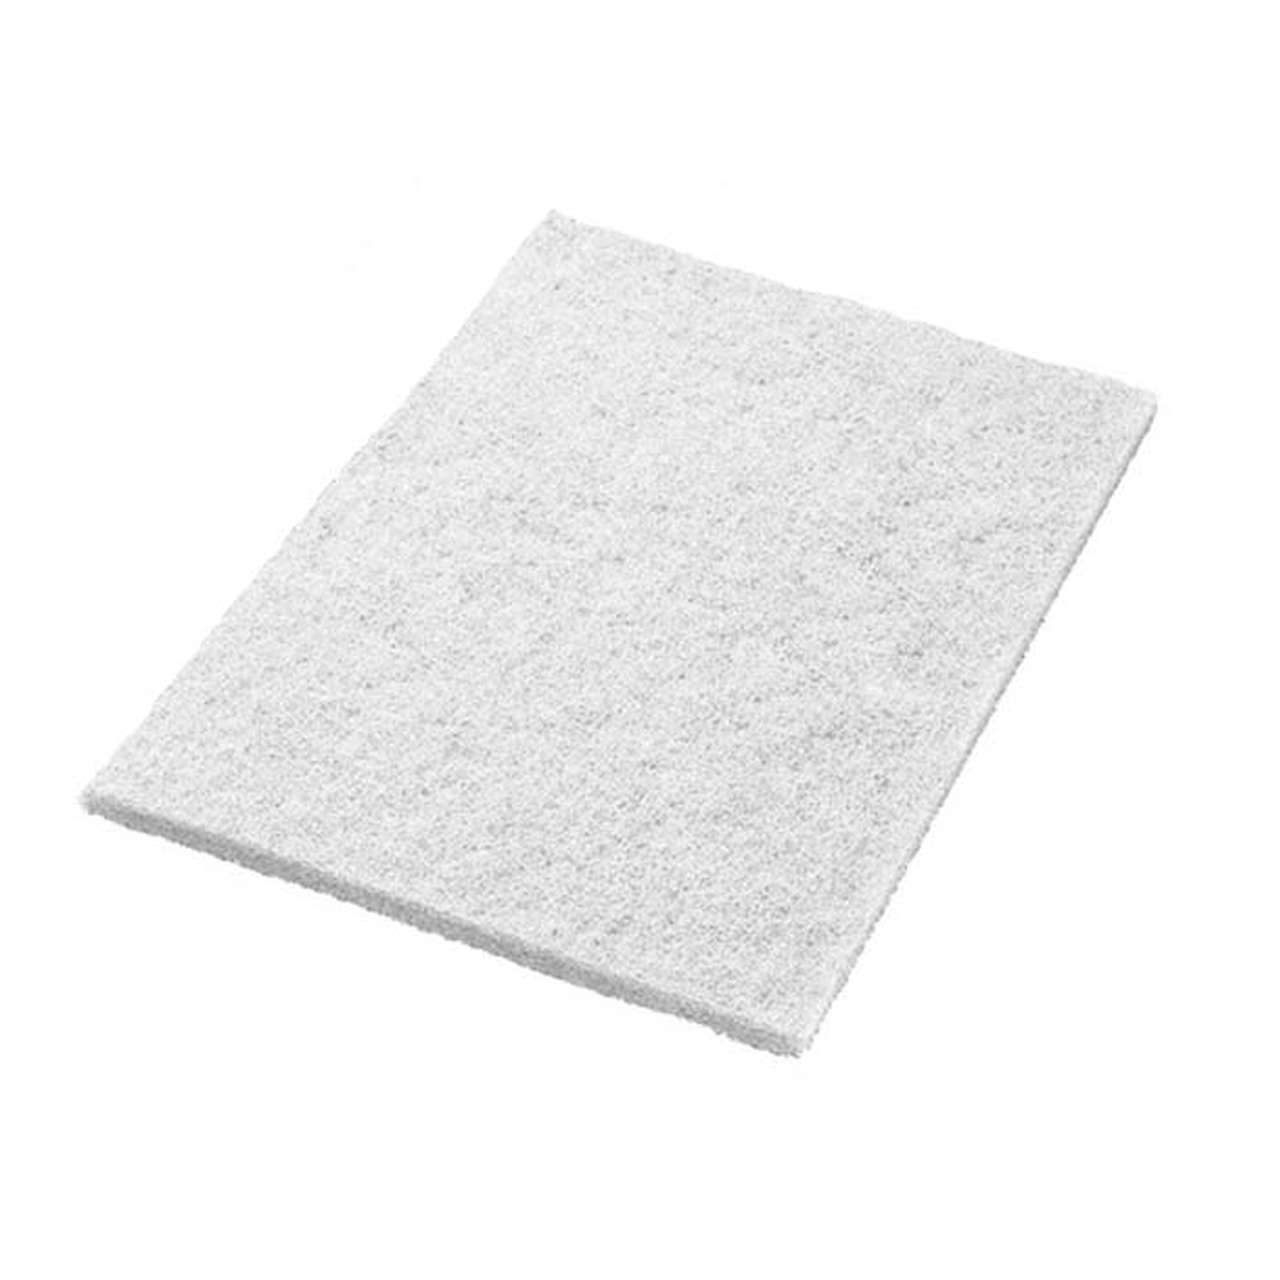 14"x20" White Twister™ Floor Pad, 2/cs